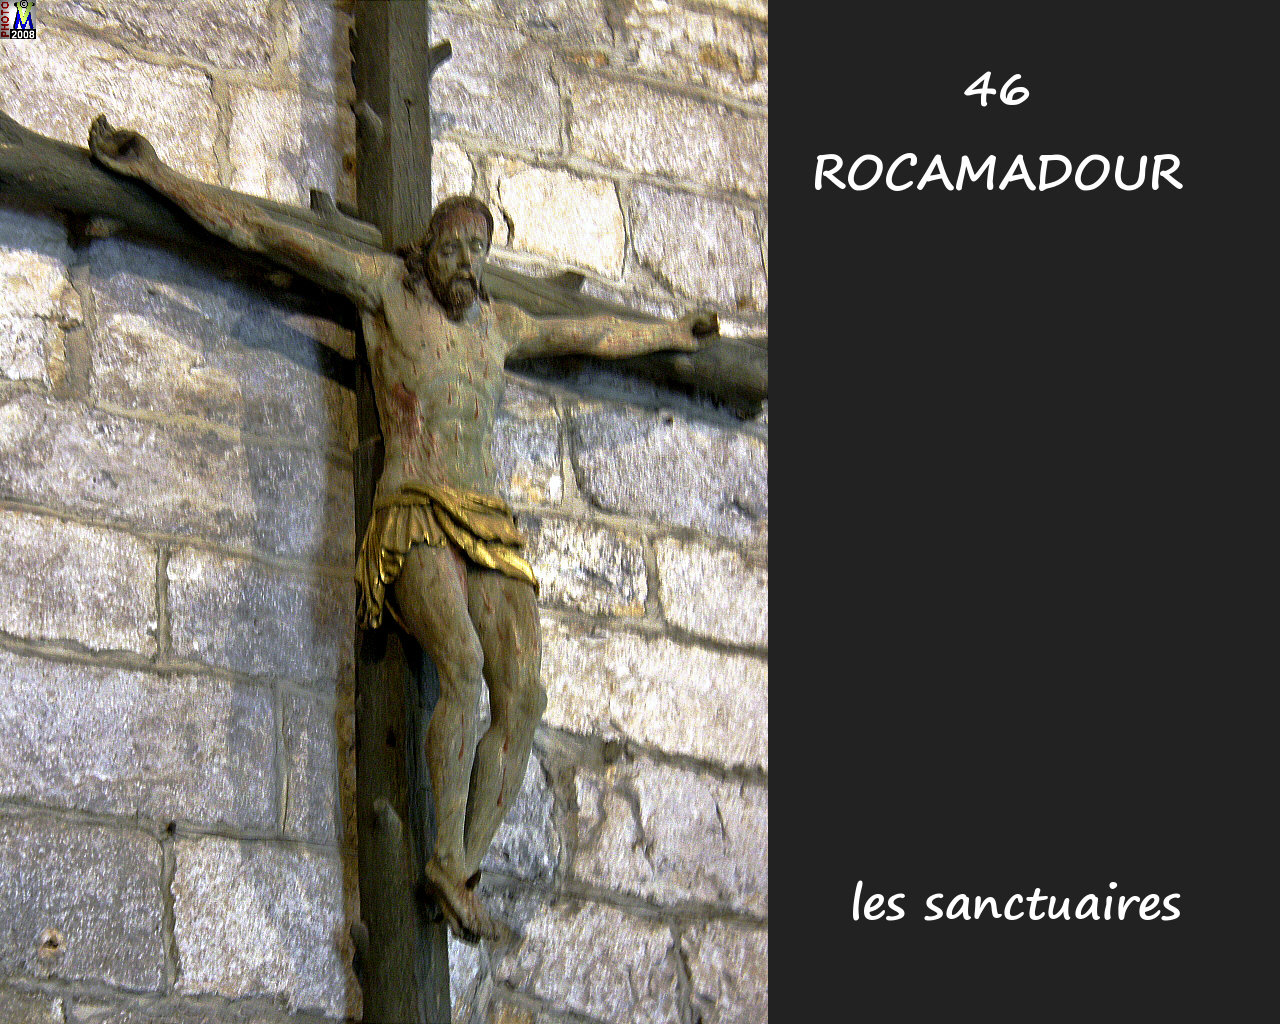 46ROCAMADOUR_sanctuaires_752.jpg